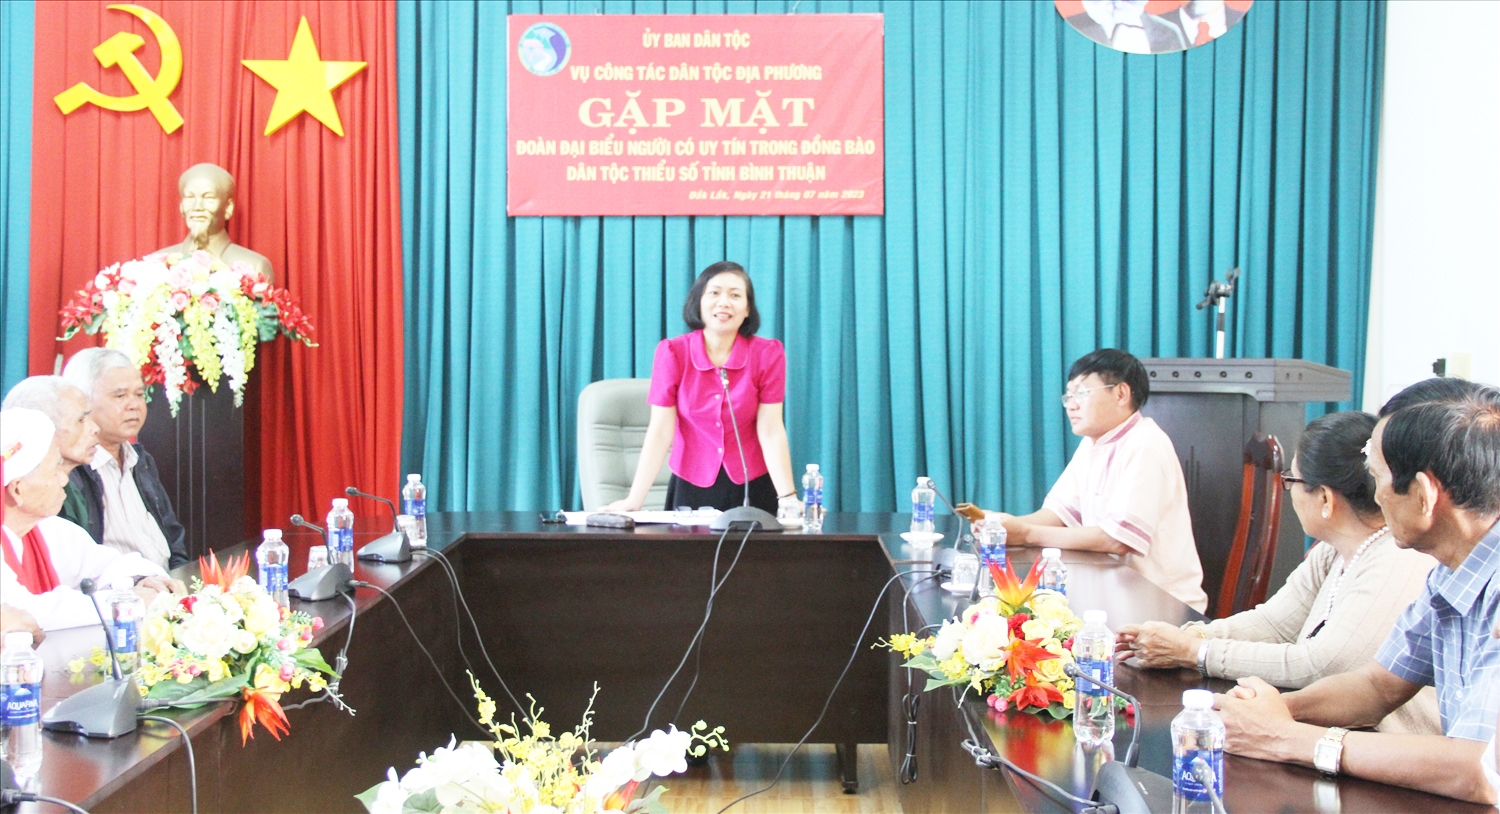 Phó Vụ trưởng Vụ Công tác dân tộc địa phương Phạm Thị Phước An phát biểu tại buổi gặp mặt